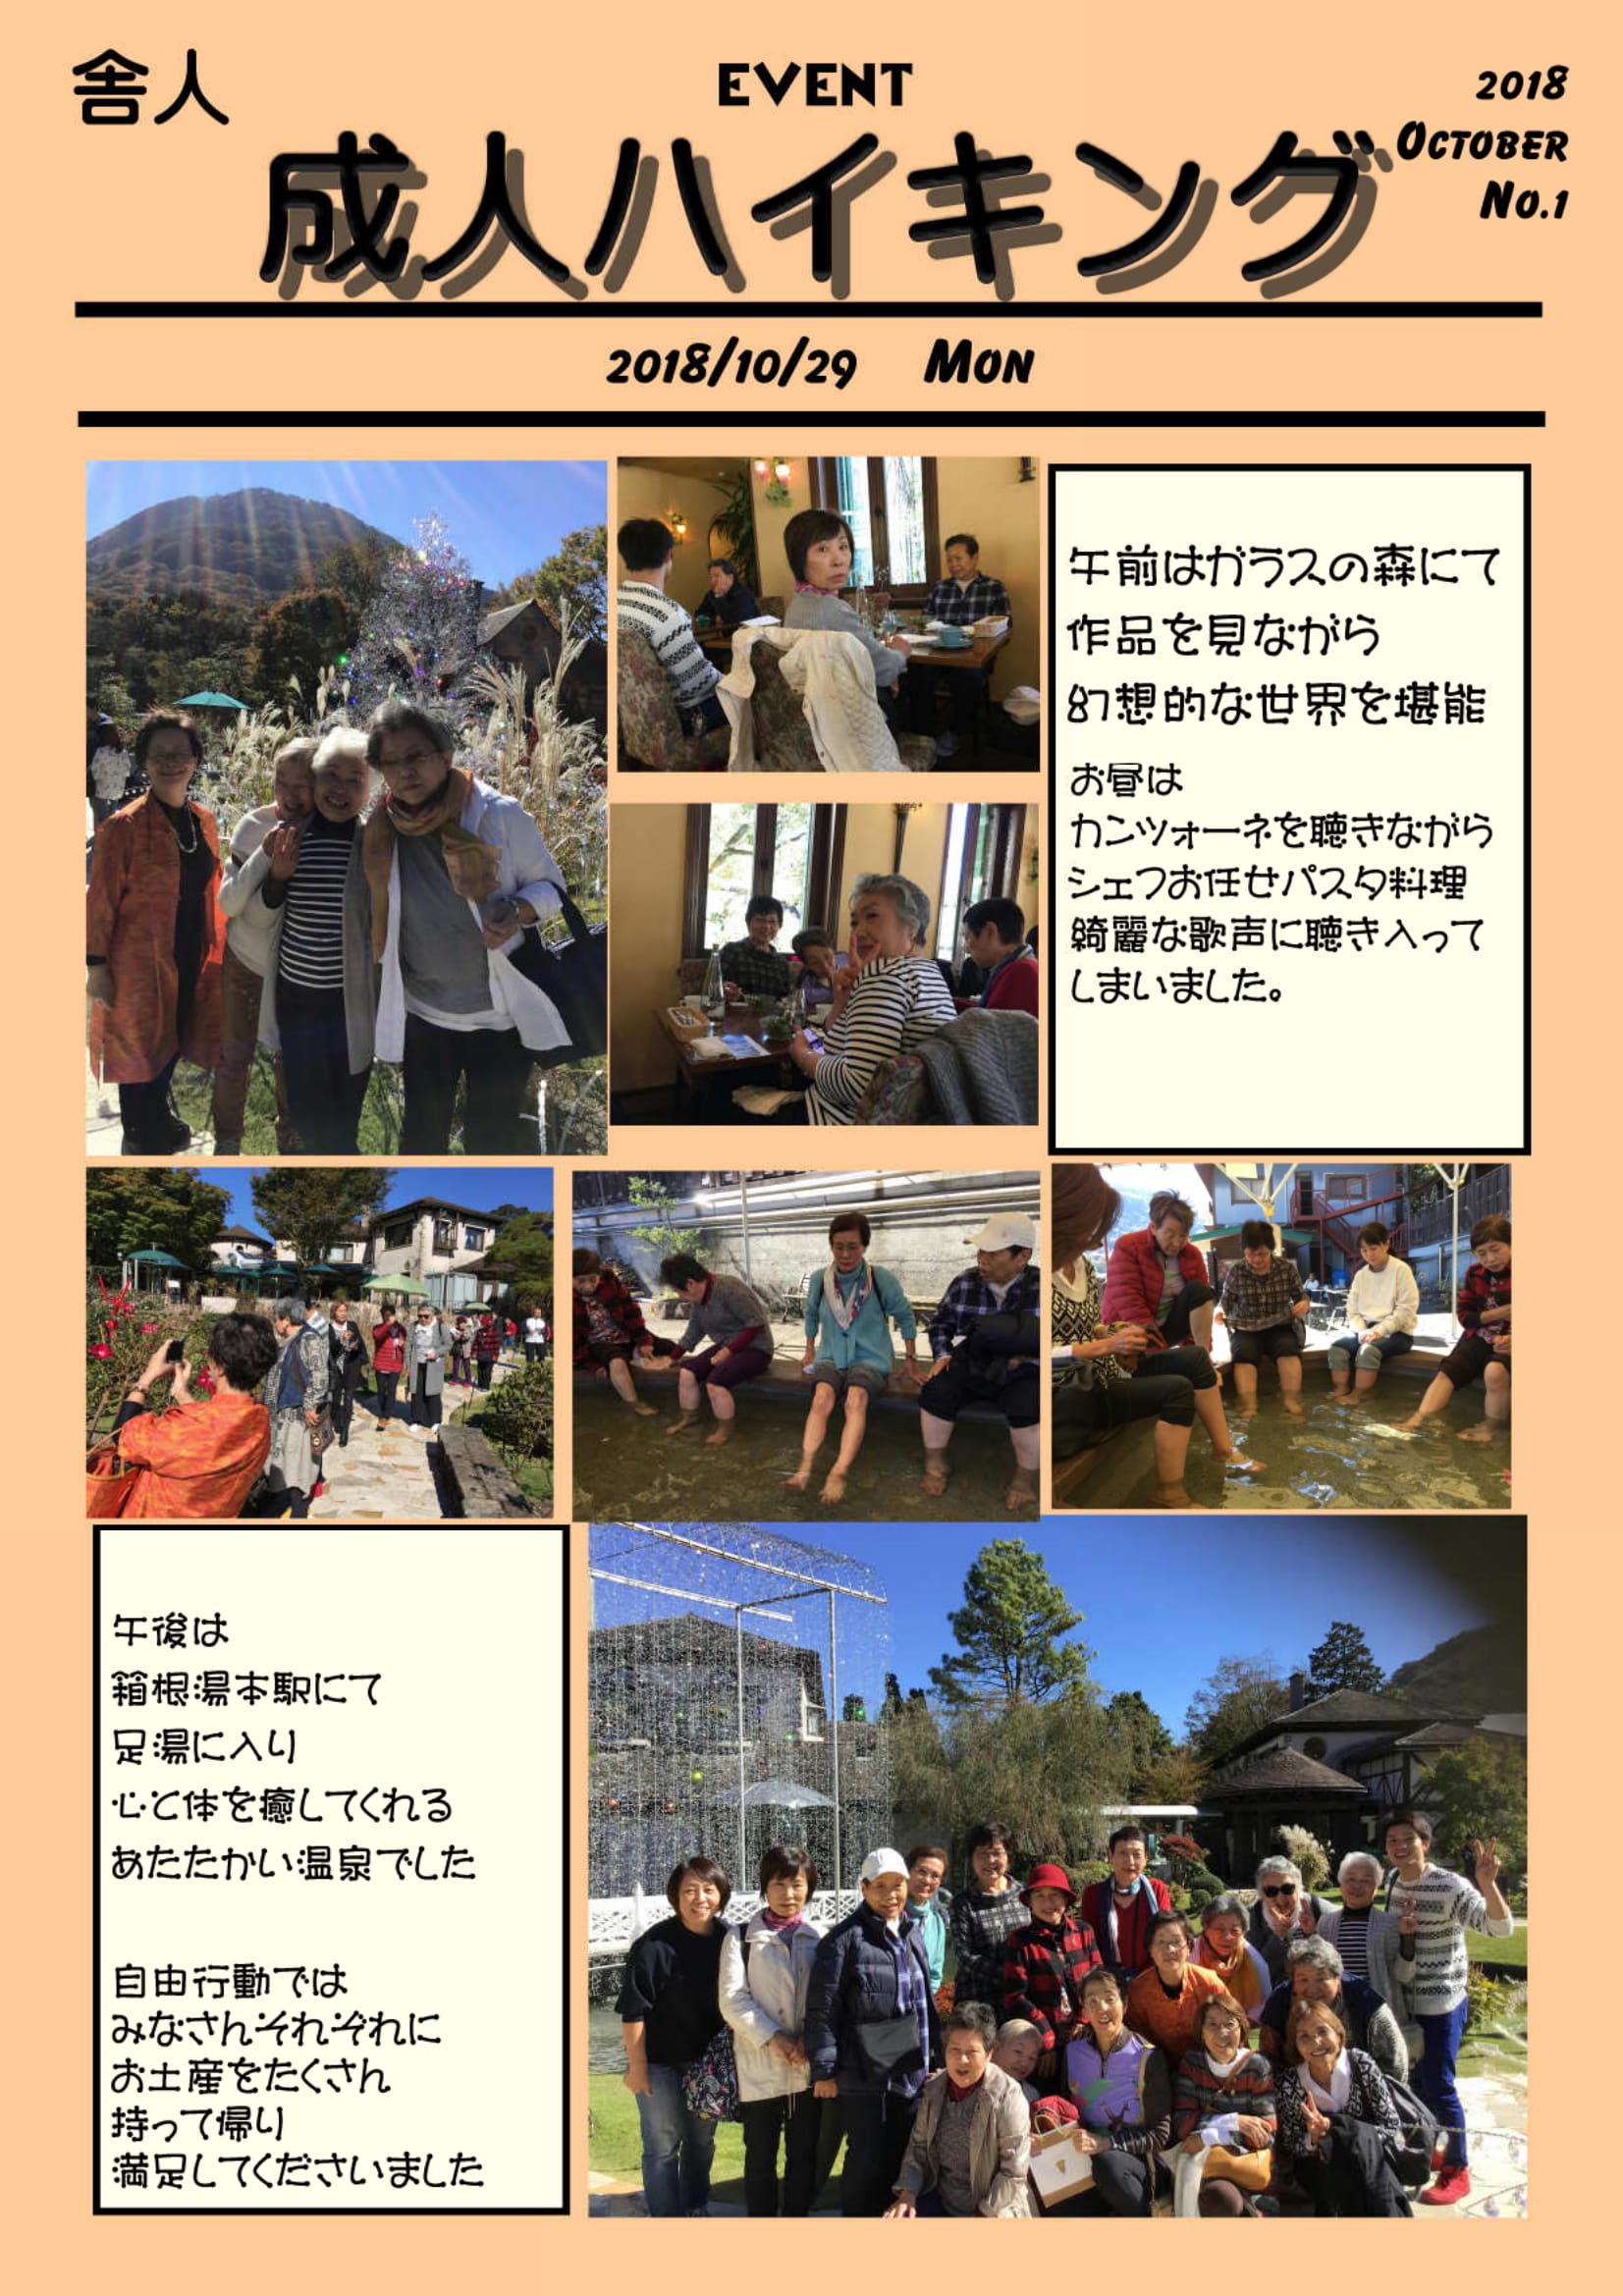 舎人スイミング 「成人イベント in 箱根」に行ってきました！